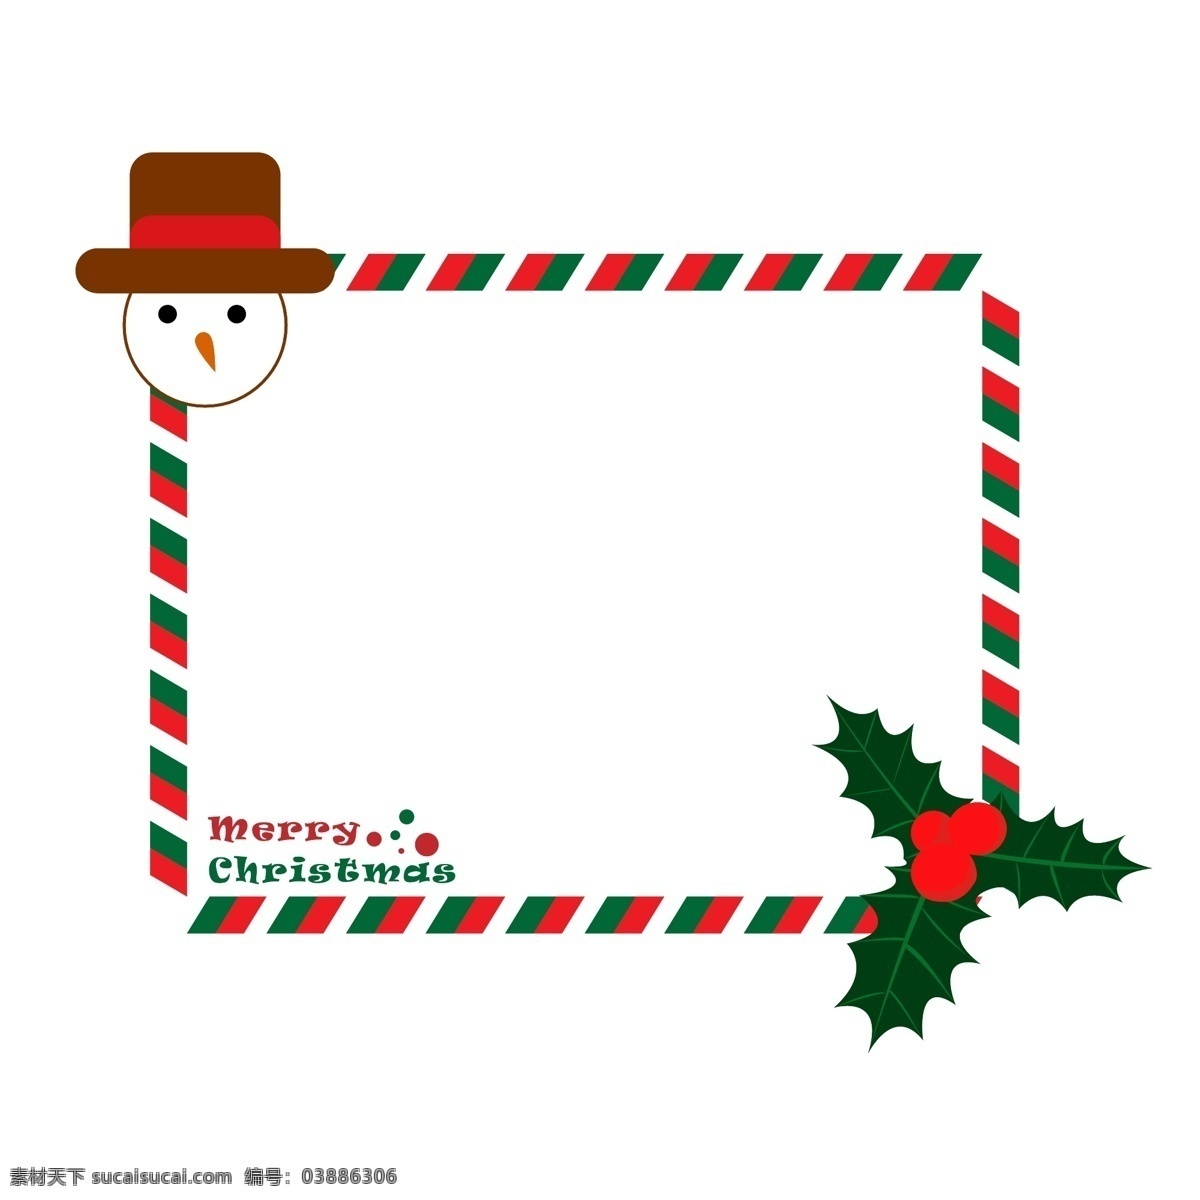 圣诞节 圣诞 元素 贺卡 边框 圣诞夜 戴帽子雪人 卡通插画风格 海报 banner